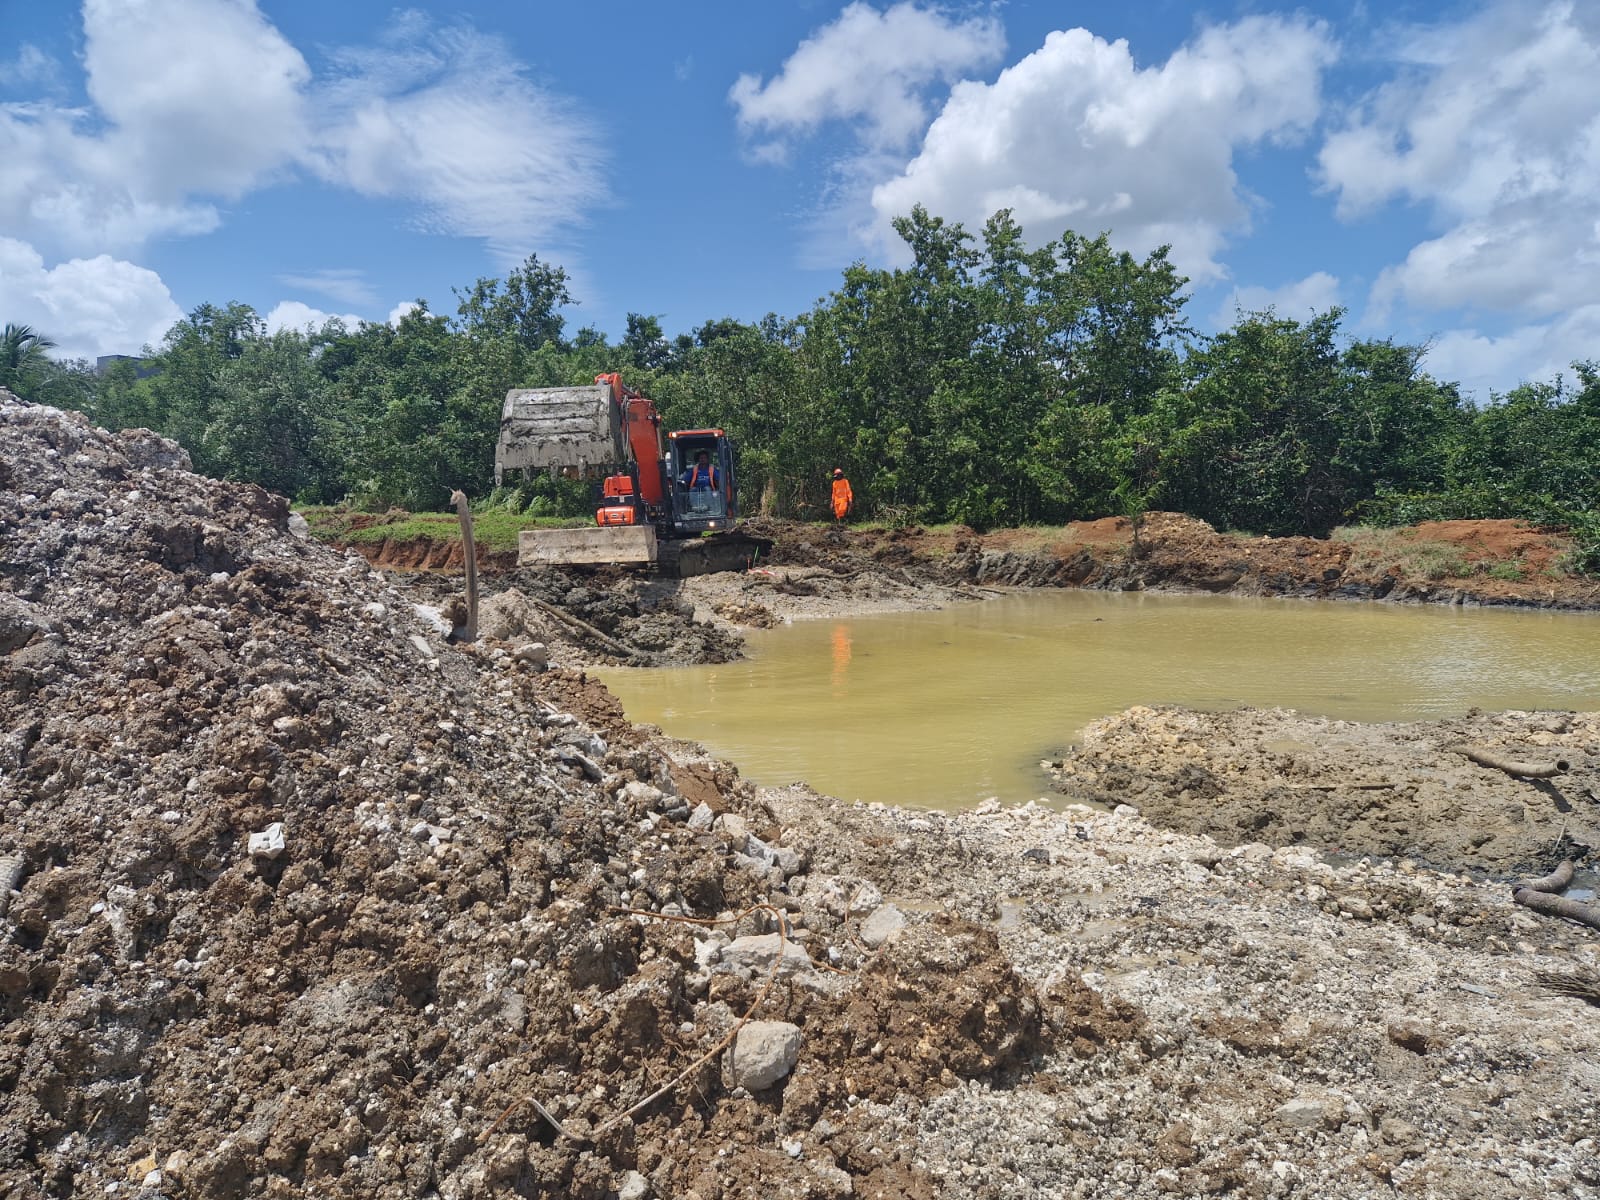     [En images] Des travaux pour redonner vie à la mangrove de Jarry

